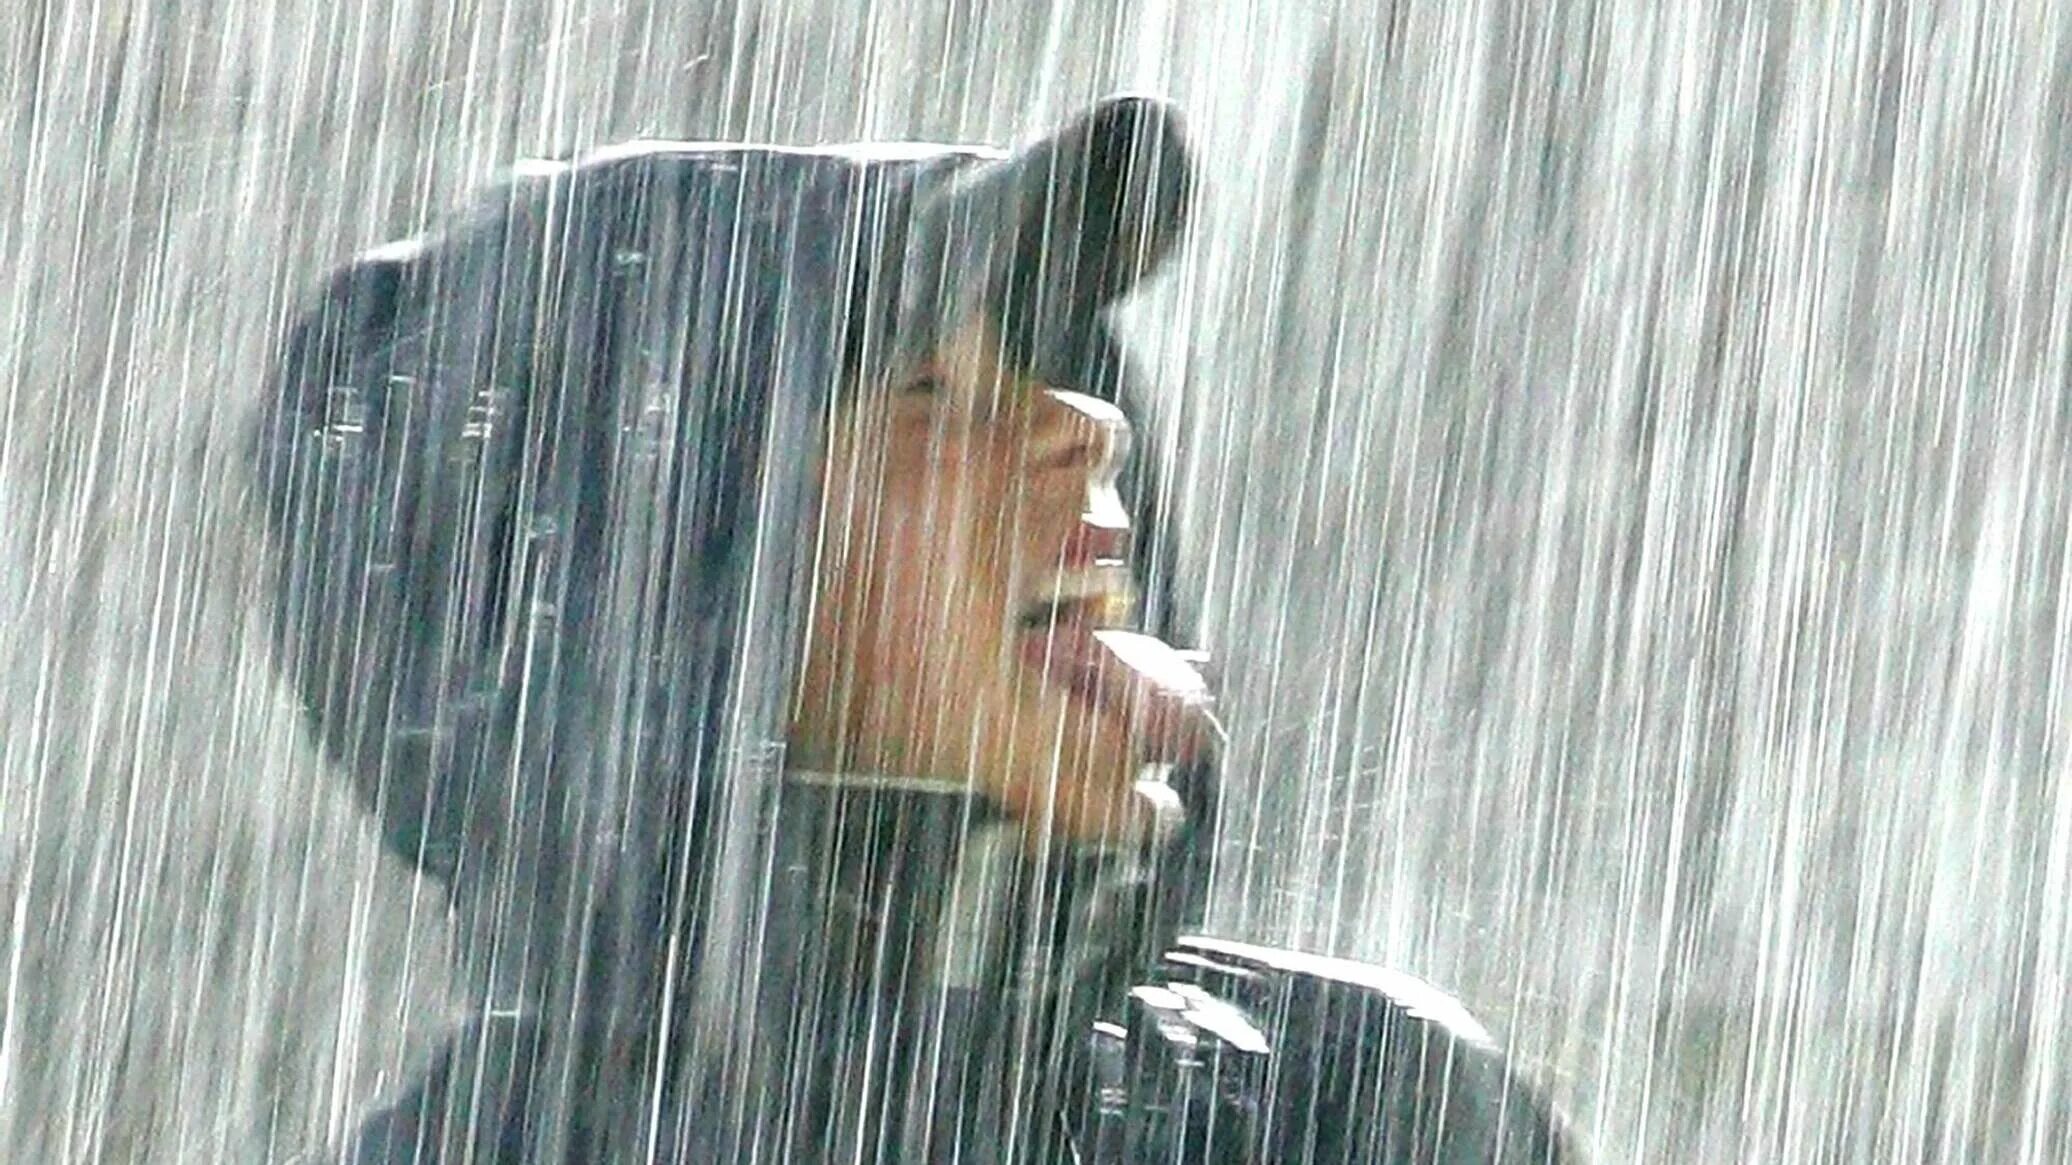 Промокла под дождем. Мокнуть под дождем. Человек промок под дождем. Под сильным дождем.